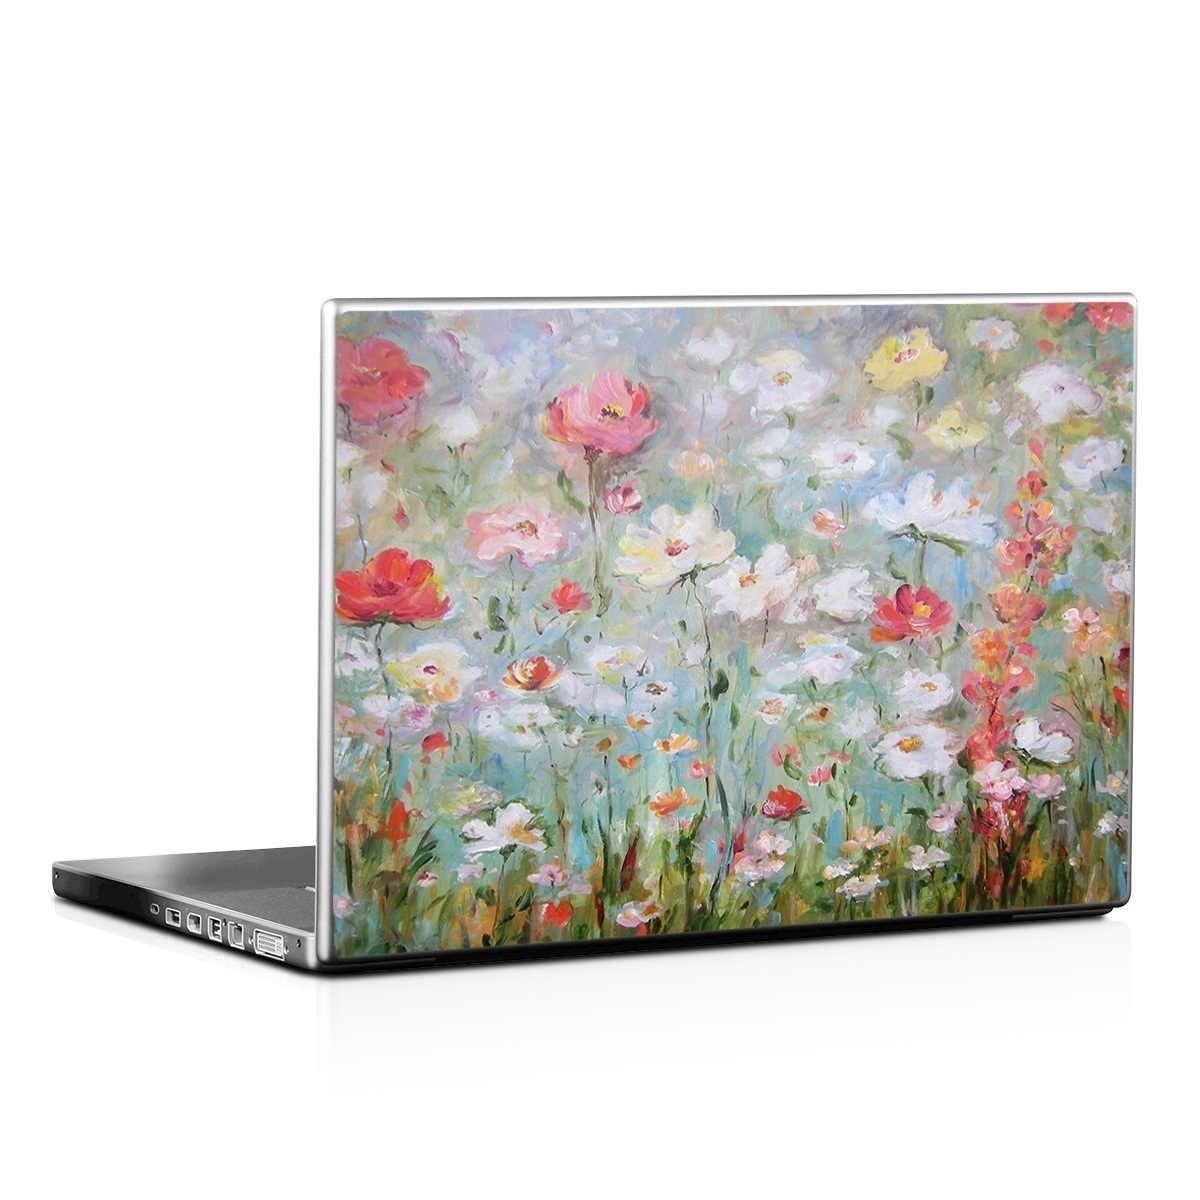 Laptop Skin - Flower Blooms (Image 1)